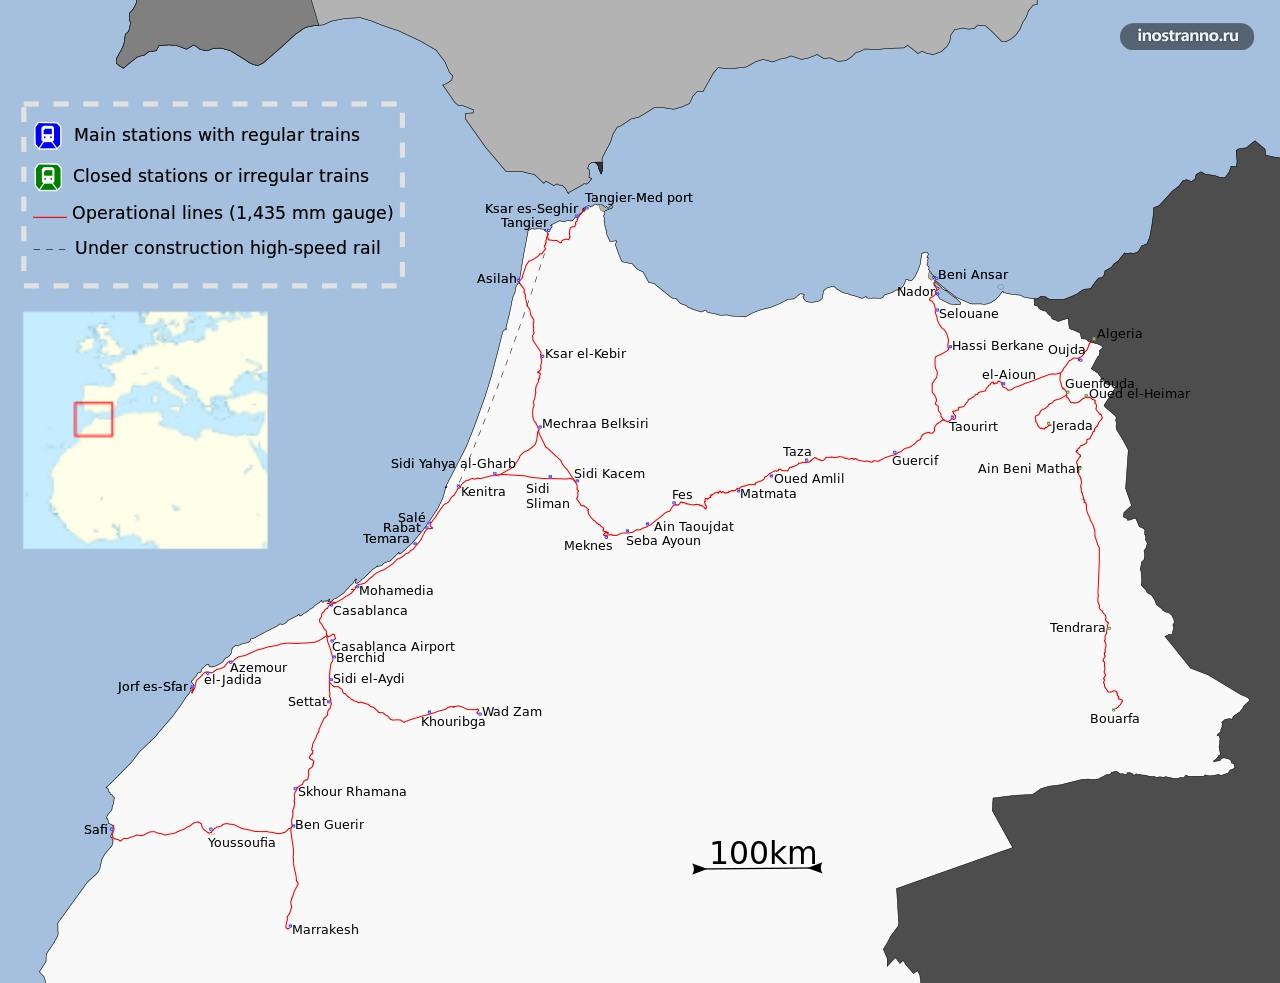 Маршрутная сеть железнодорожного транспорта в Марокко